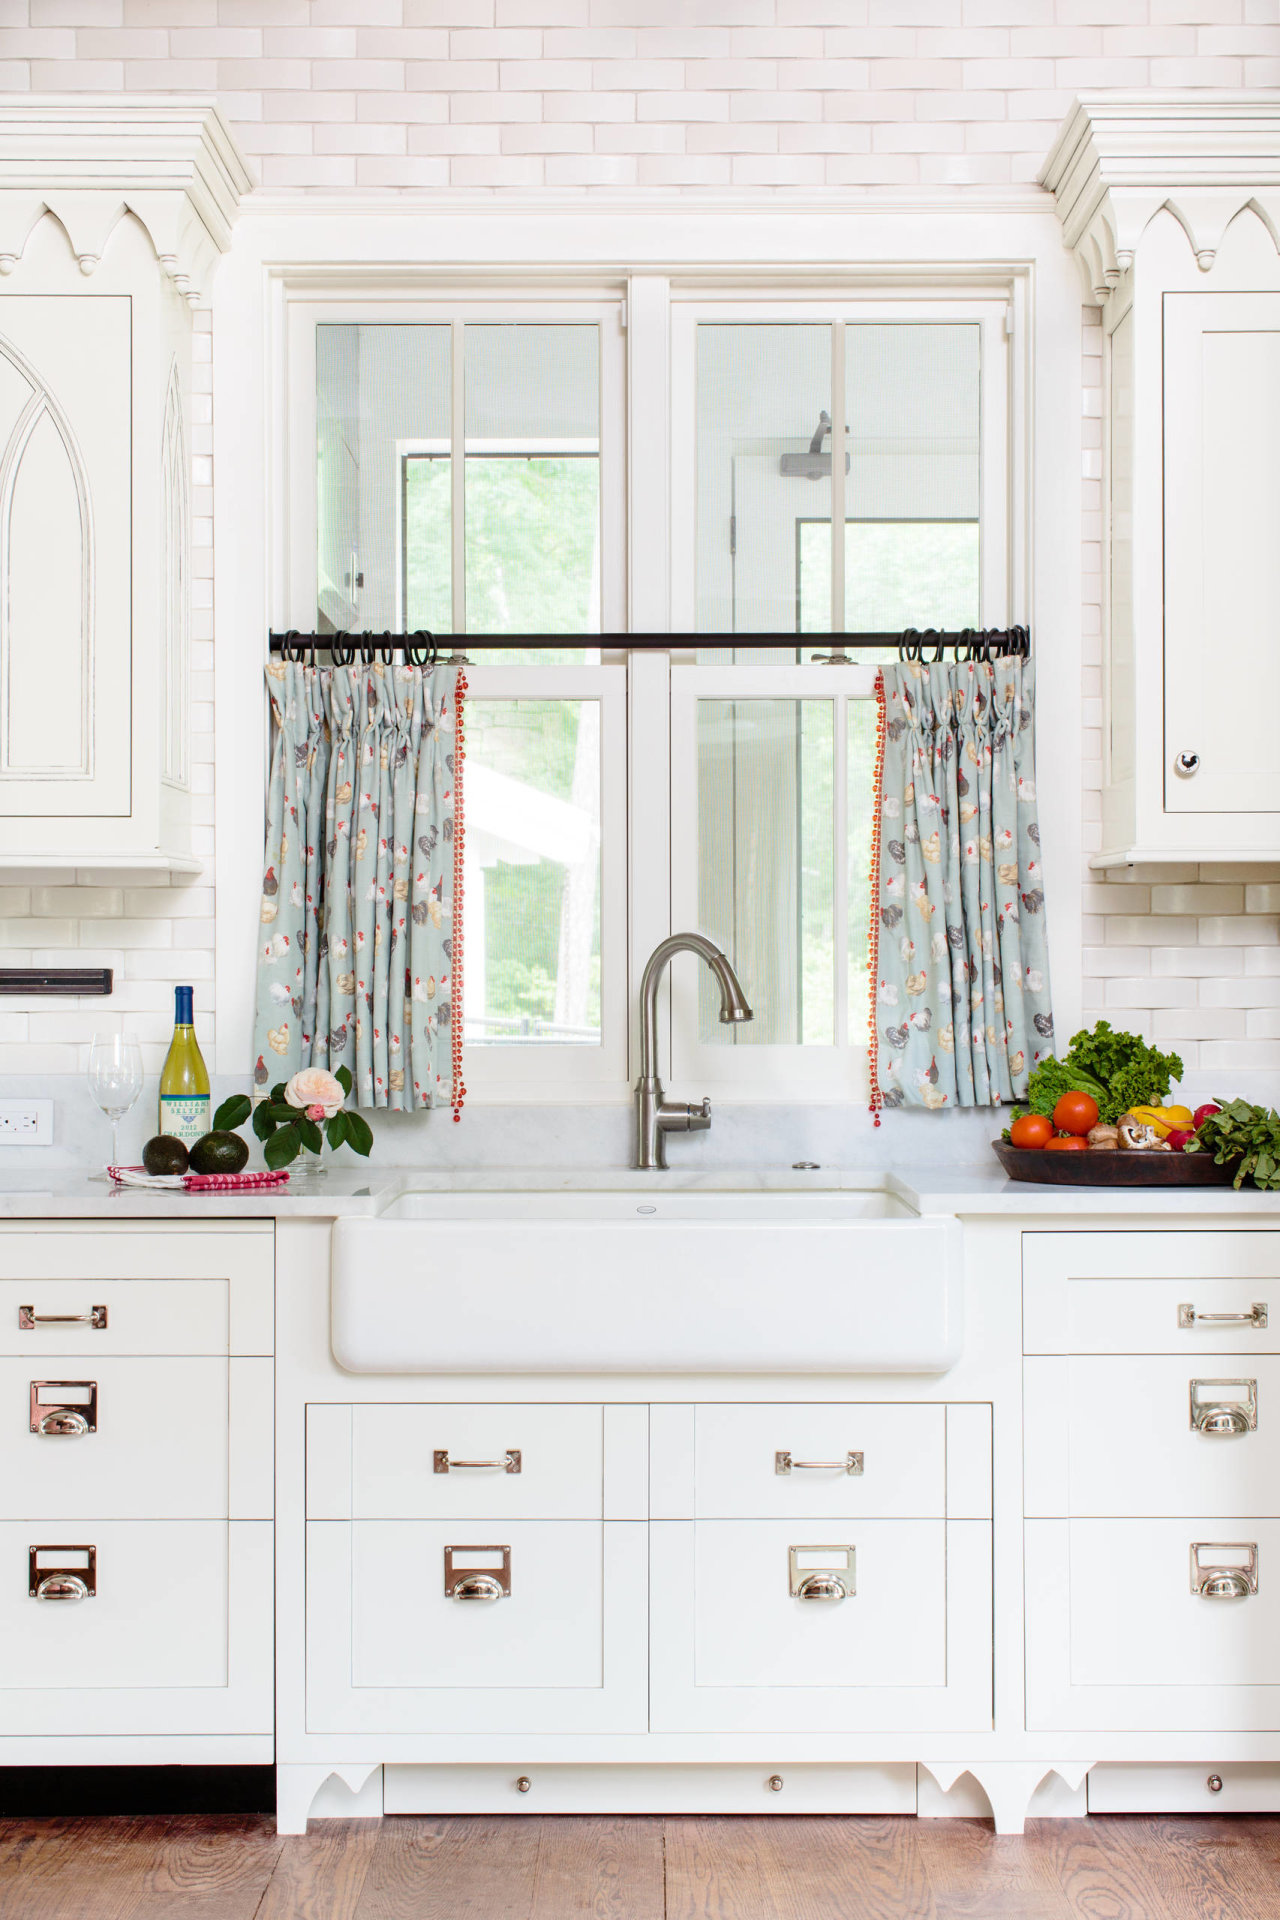 Khám phá mẫu màn cửa nhà bếp ấn tượng đầy màu sắc và phong cách hiện đại. Chúng sẽ giúp bạn tạo nên không gian nội thất đẹp mắt và tinh tế cho căn nhà của mình. Hãy chọn một mẫu màn cửa nhà bếp thật phù hợp với sở thích và phong cách của bạn để tạo nên sự khác biệt và ấn tượng trong không gian sống của mình.